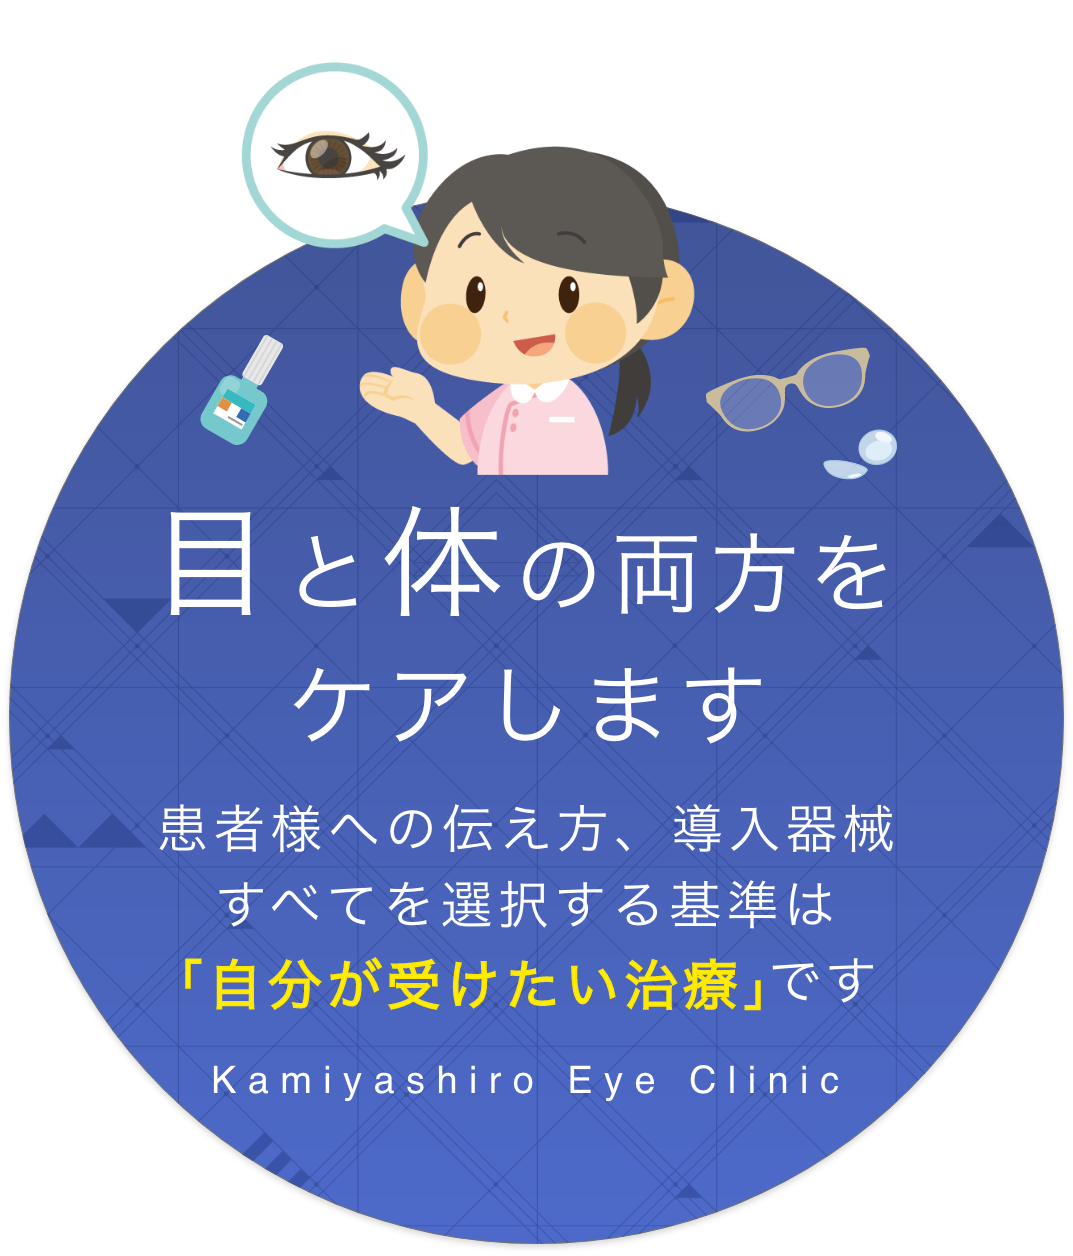 目と体の両方をケアします 患者様への伝え方、導入器械すべてを選択する基準は「自分が受けたい治療」です Kamiyashiro Eye Clinic